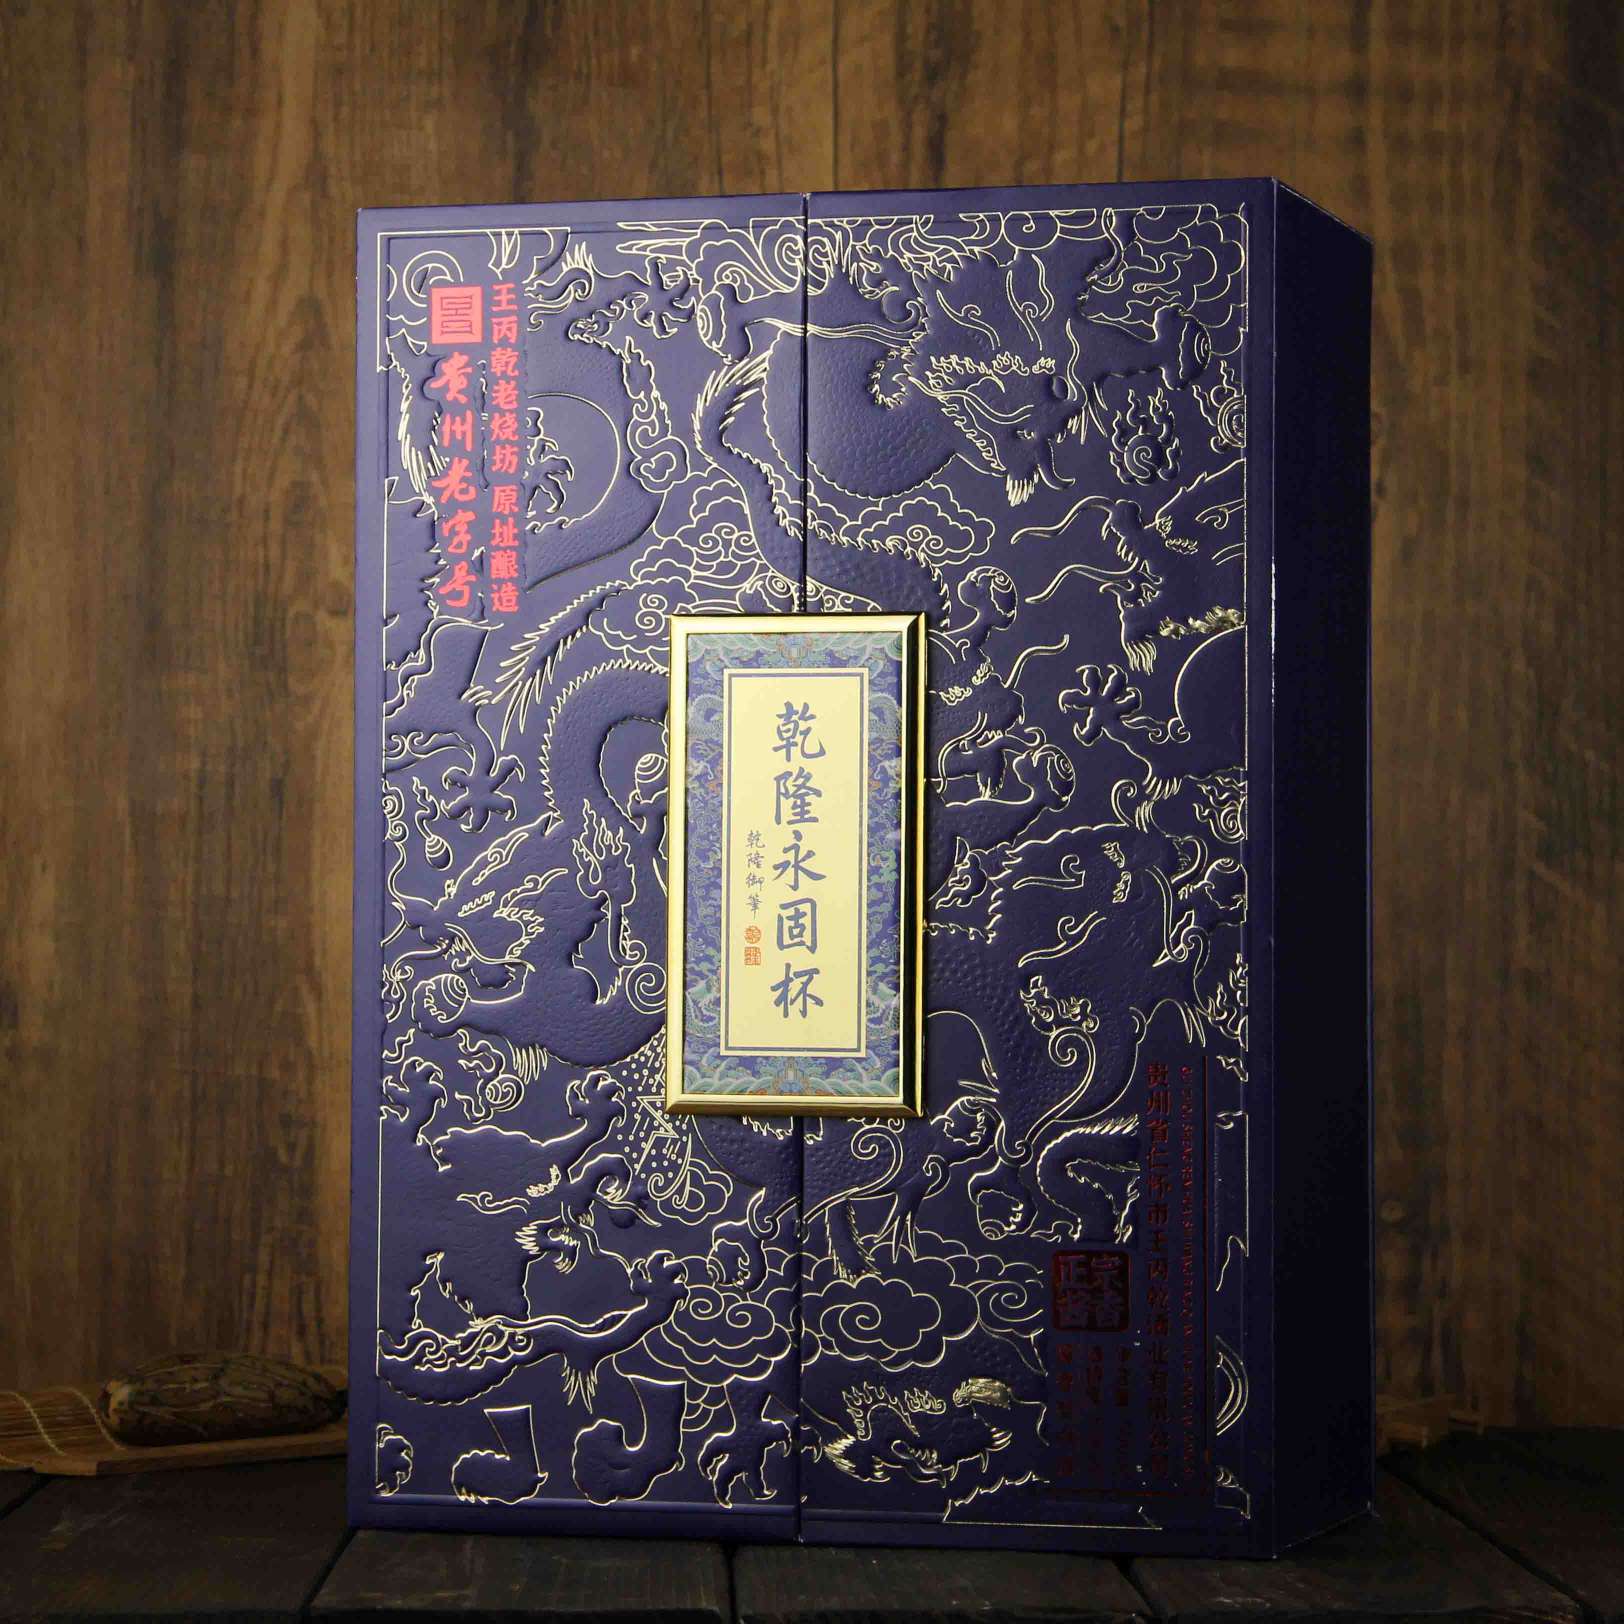 中国贵州乾隆永固杯·蓝酱香型白酒